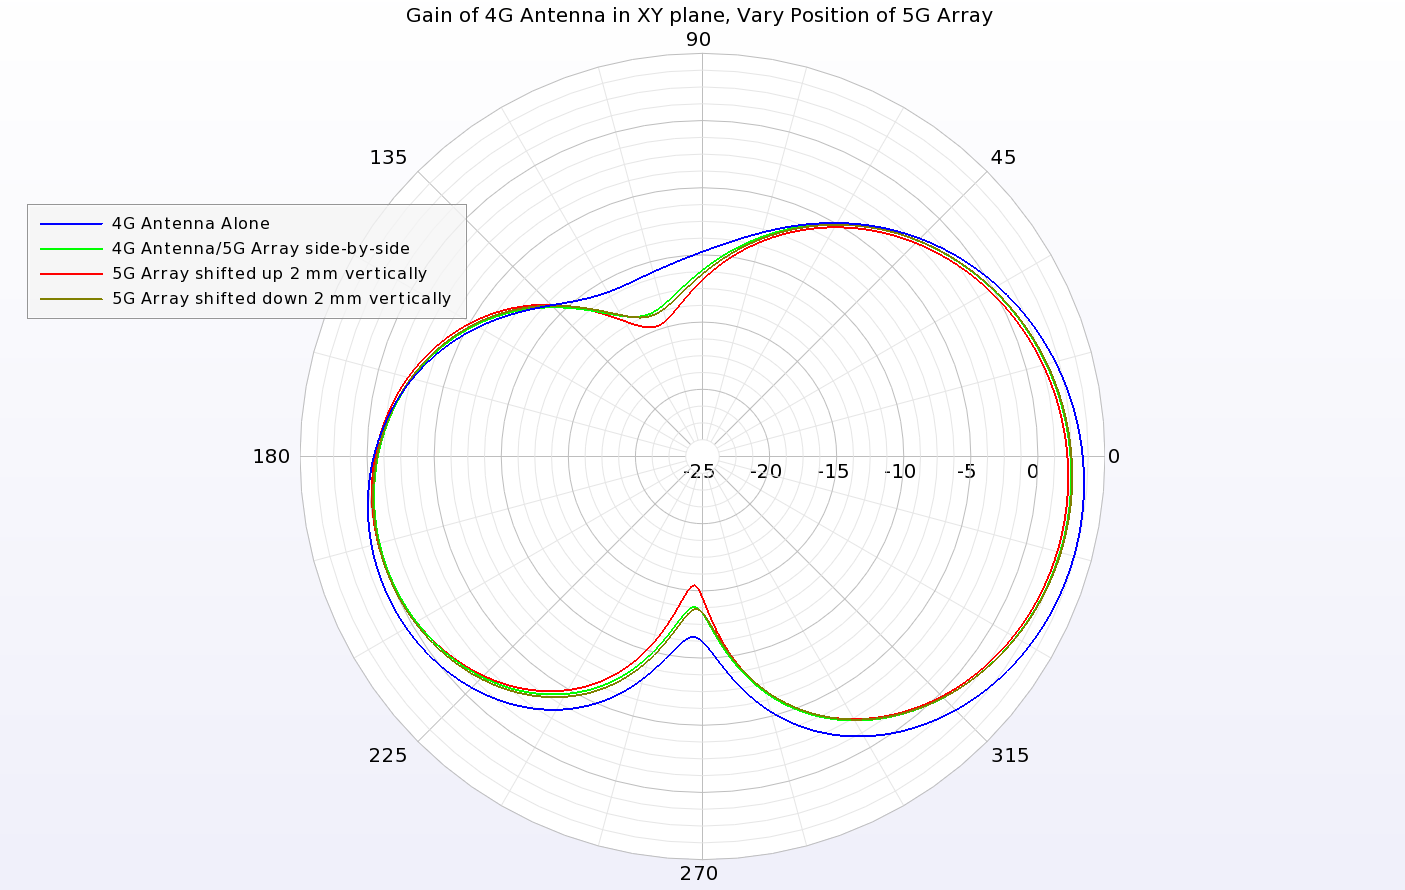 Figura 11: El patrón de ganancia de la antena 4G en el plano XY sólo se ve ligeramente afectado por el movimiento del conjunto de antenas 5G.